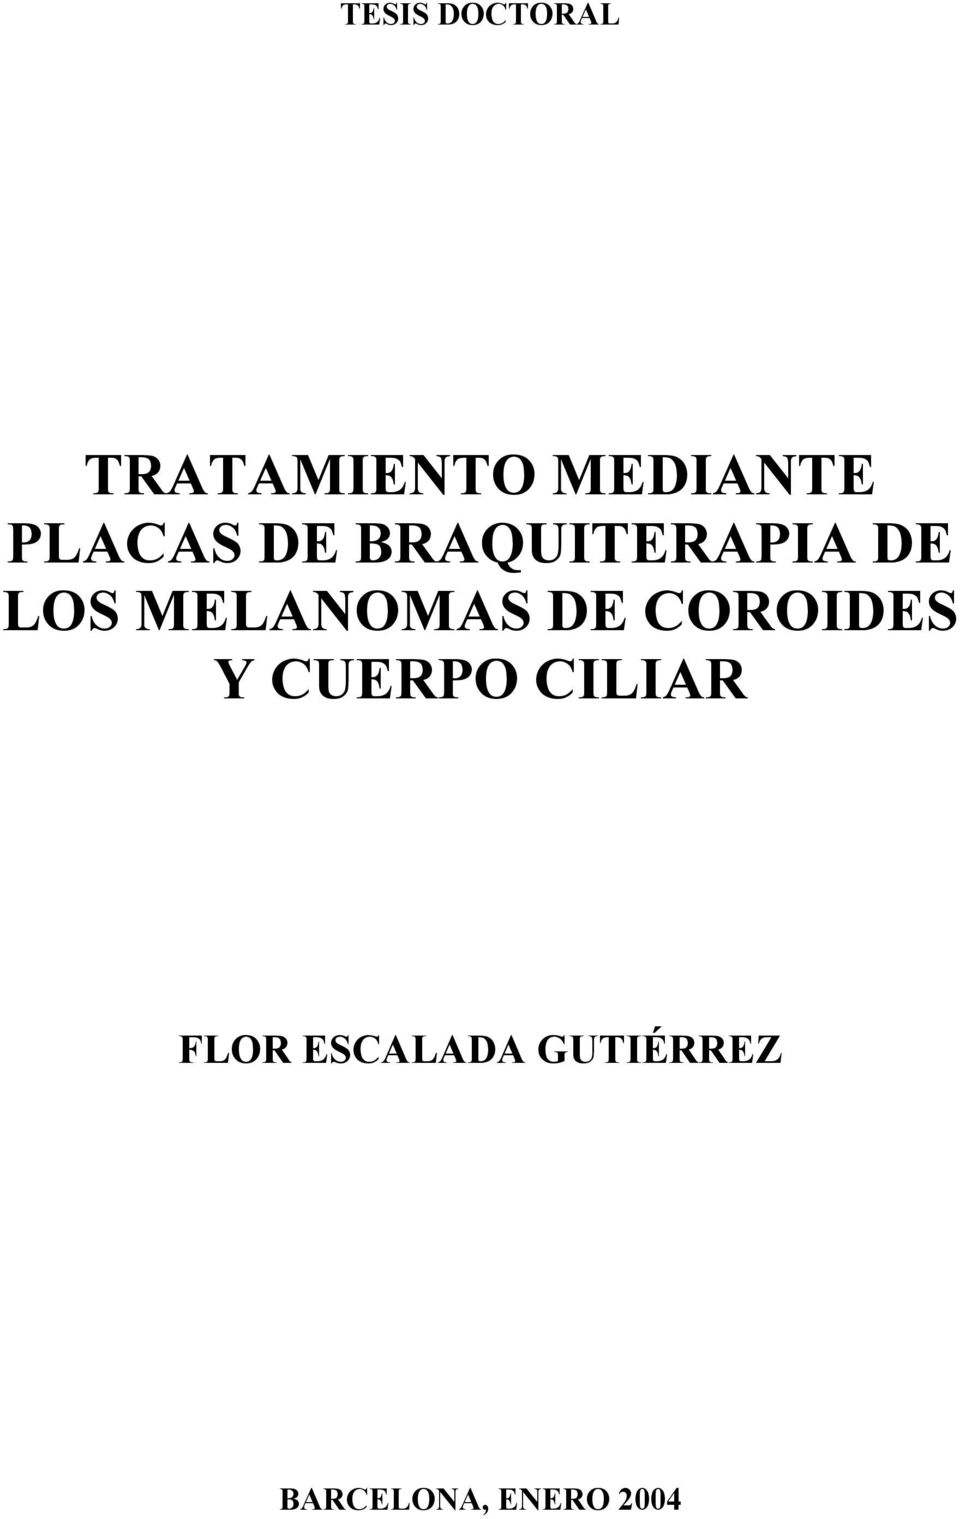 MELANOMAS DE COROIDES Y CUERPO CILIAR